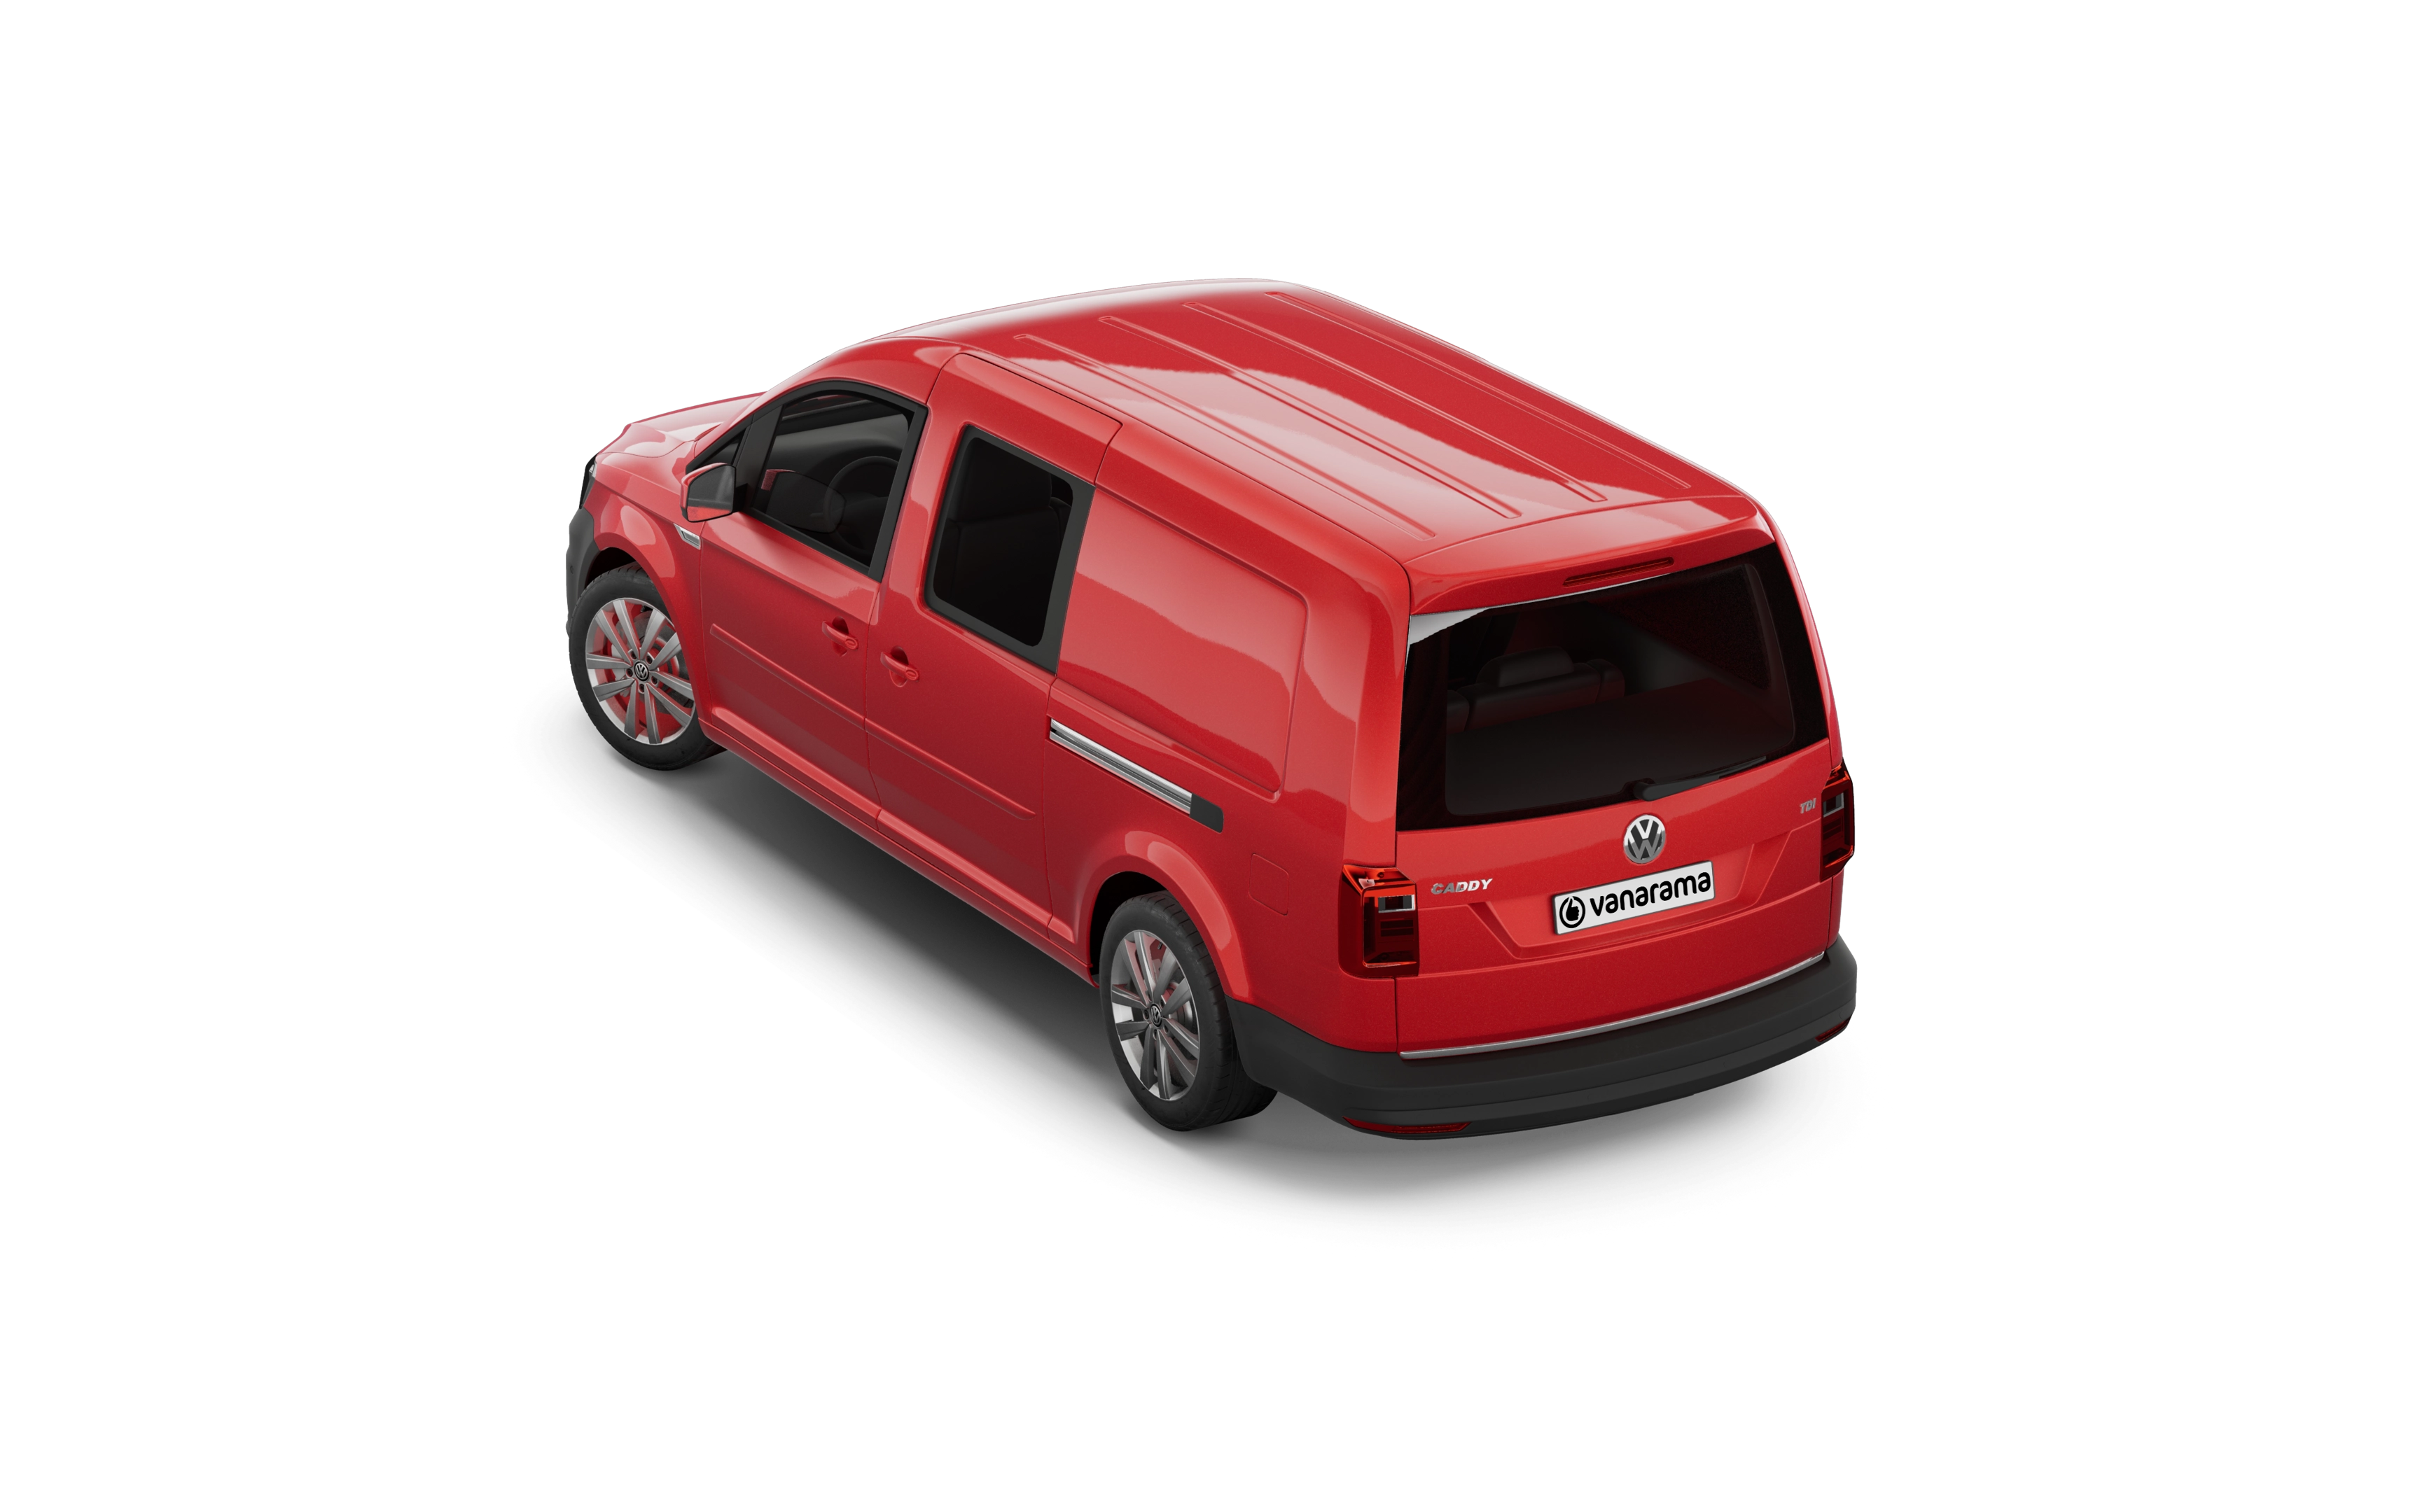 Volkswagen caddy maxi estate 2.0 tdi 122 life 5 doors [5 seat]